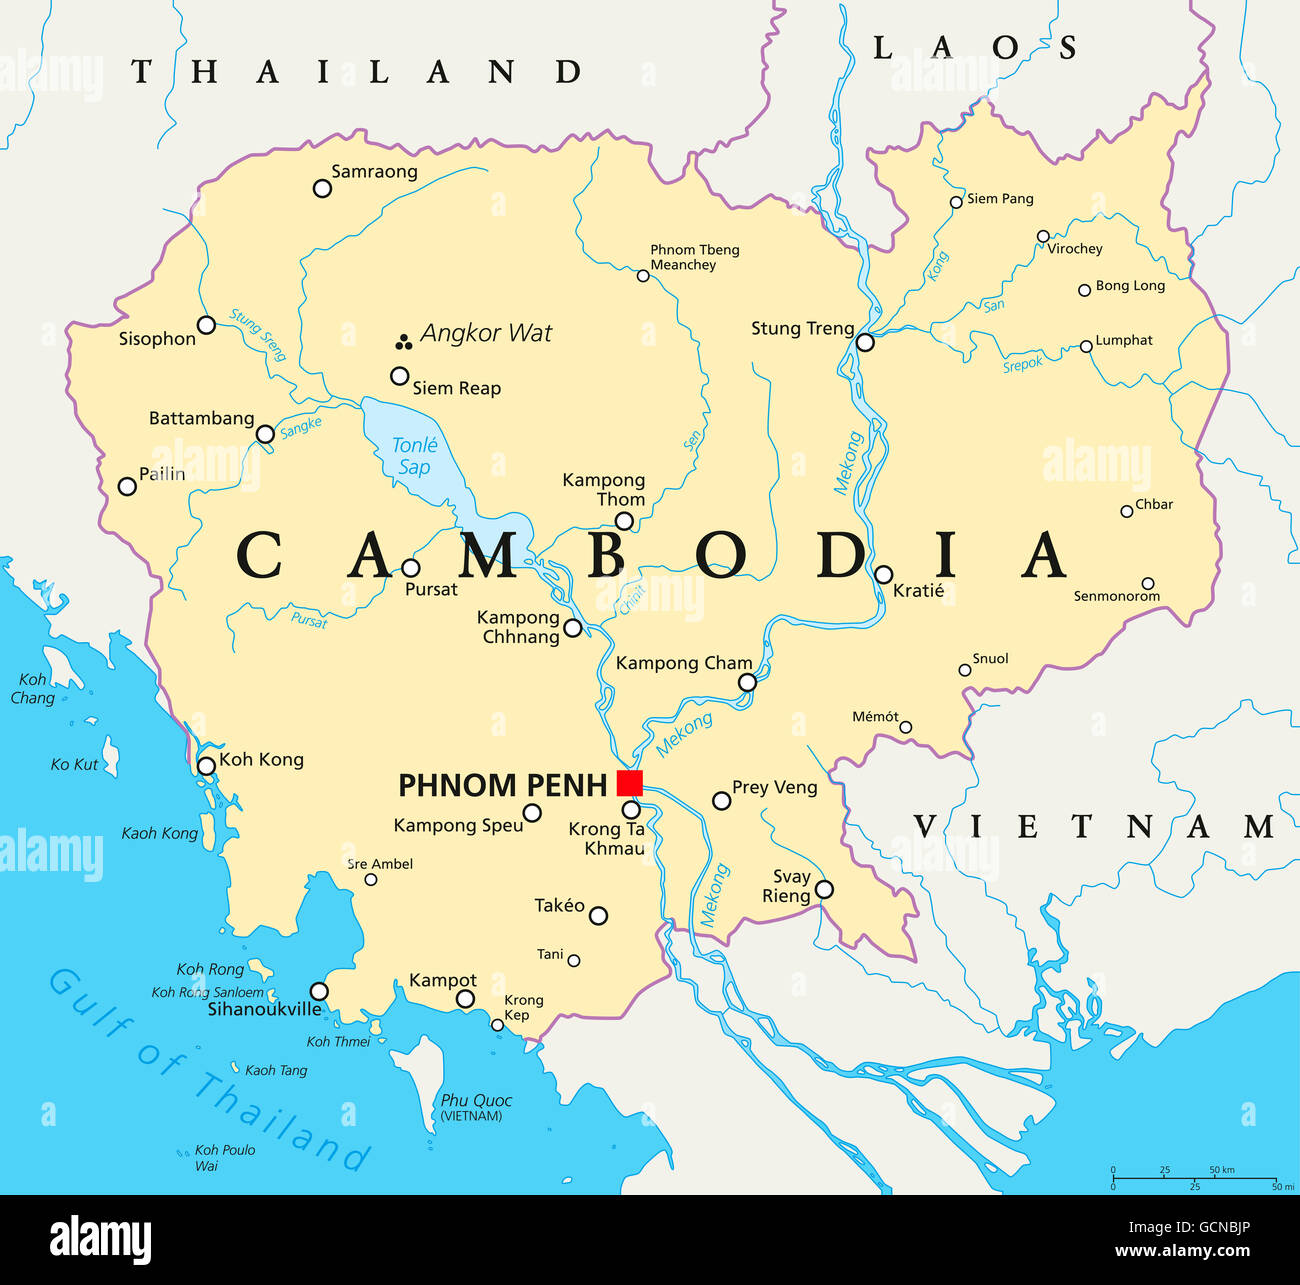 Cambogia mappa politico con capitale Phnom Penh, confini nazionali importanti città, fiumi e laghi. Regno in Indocina. Foto Stock